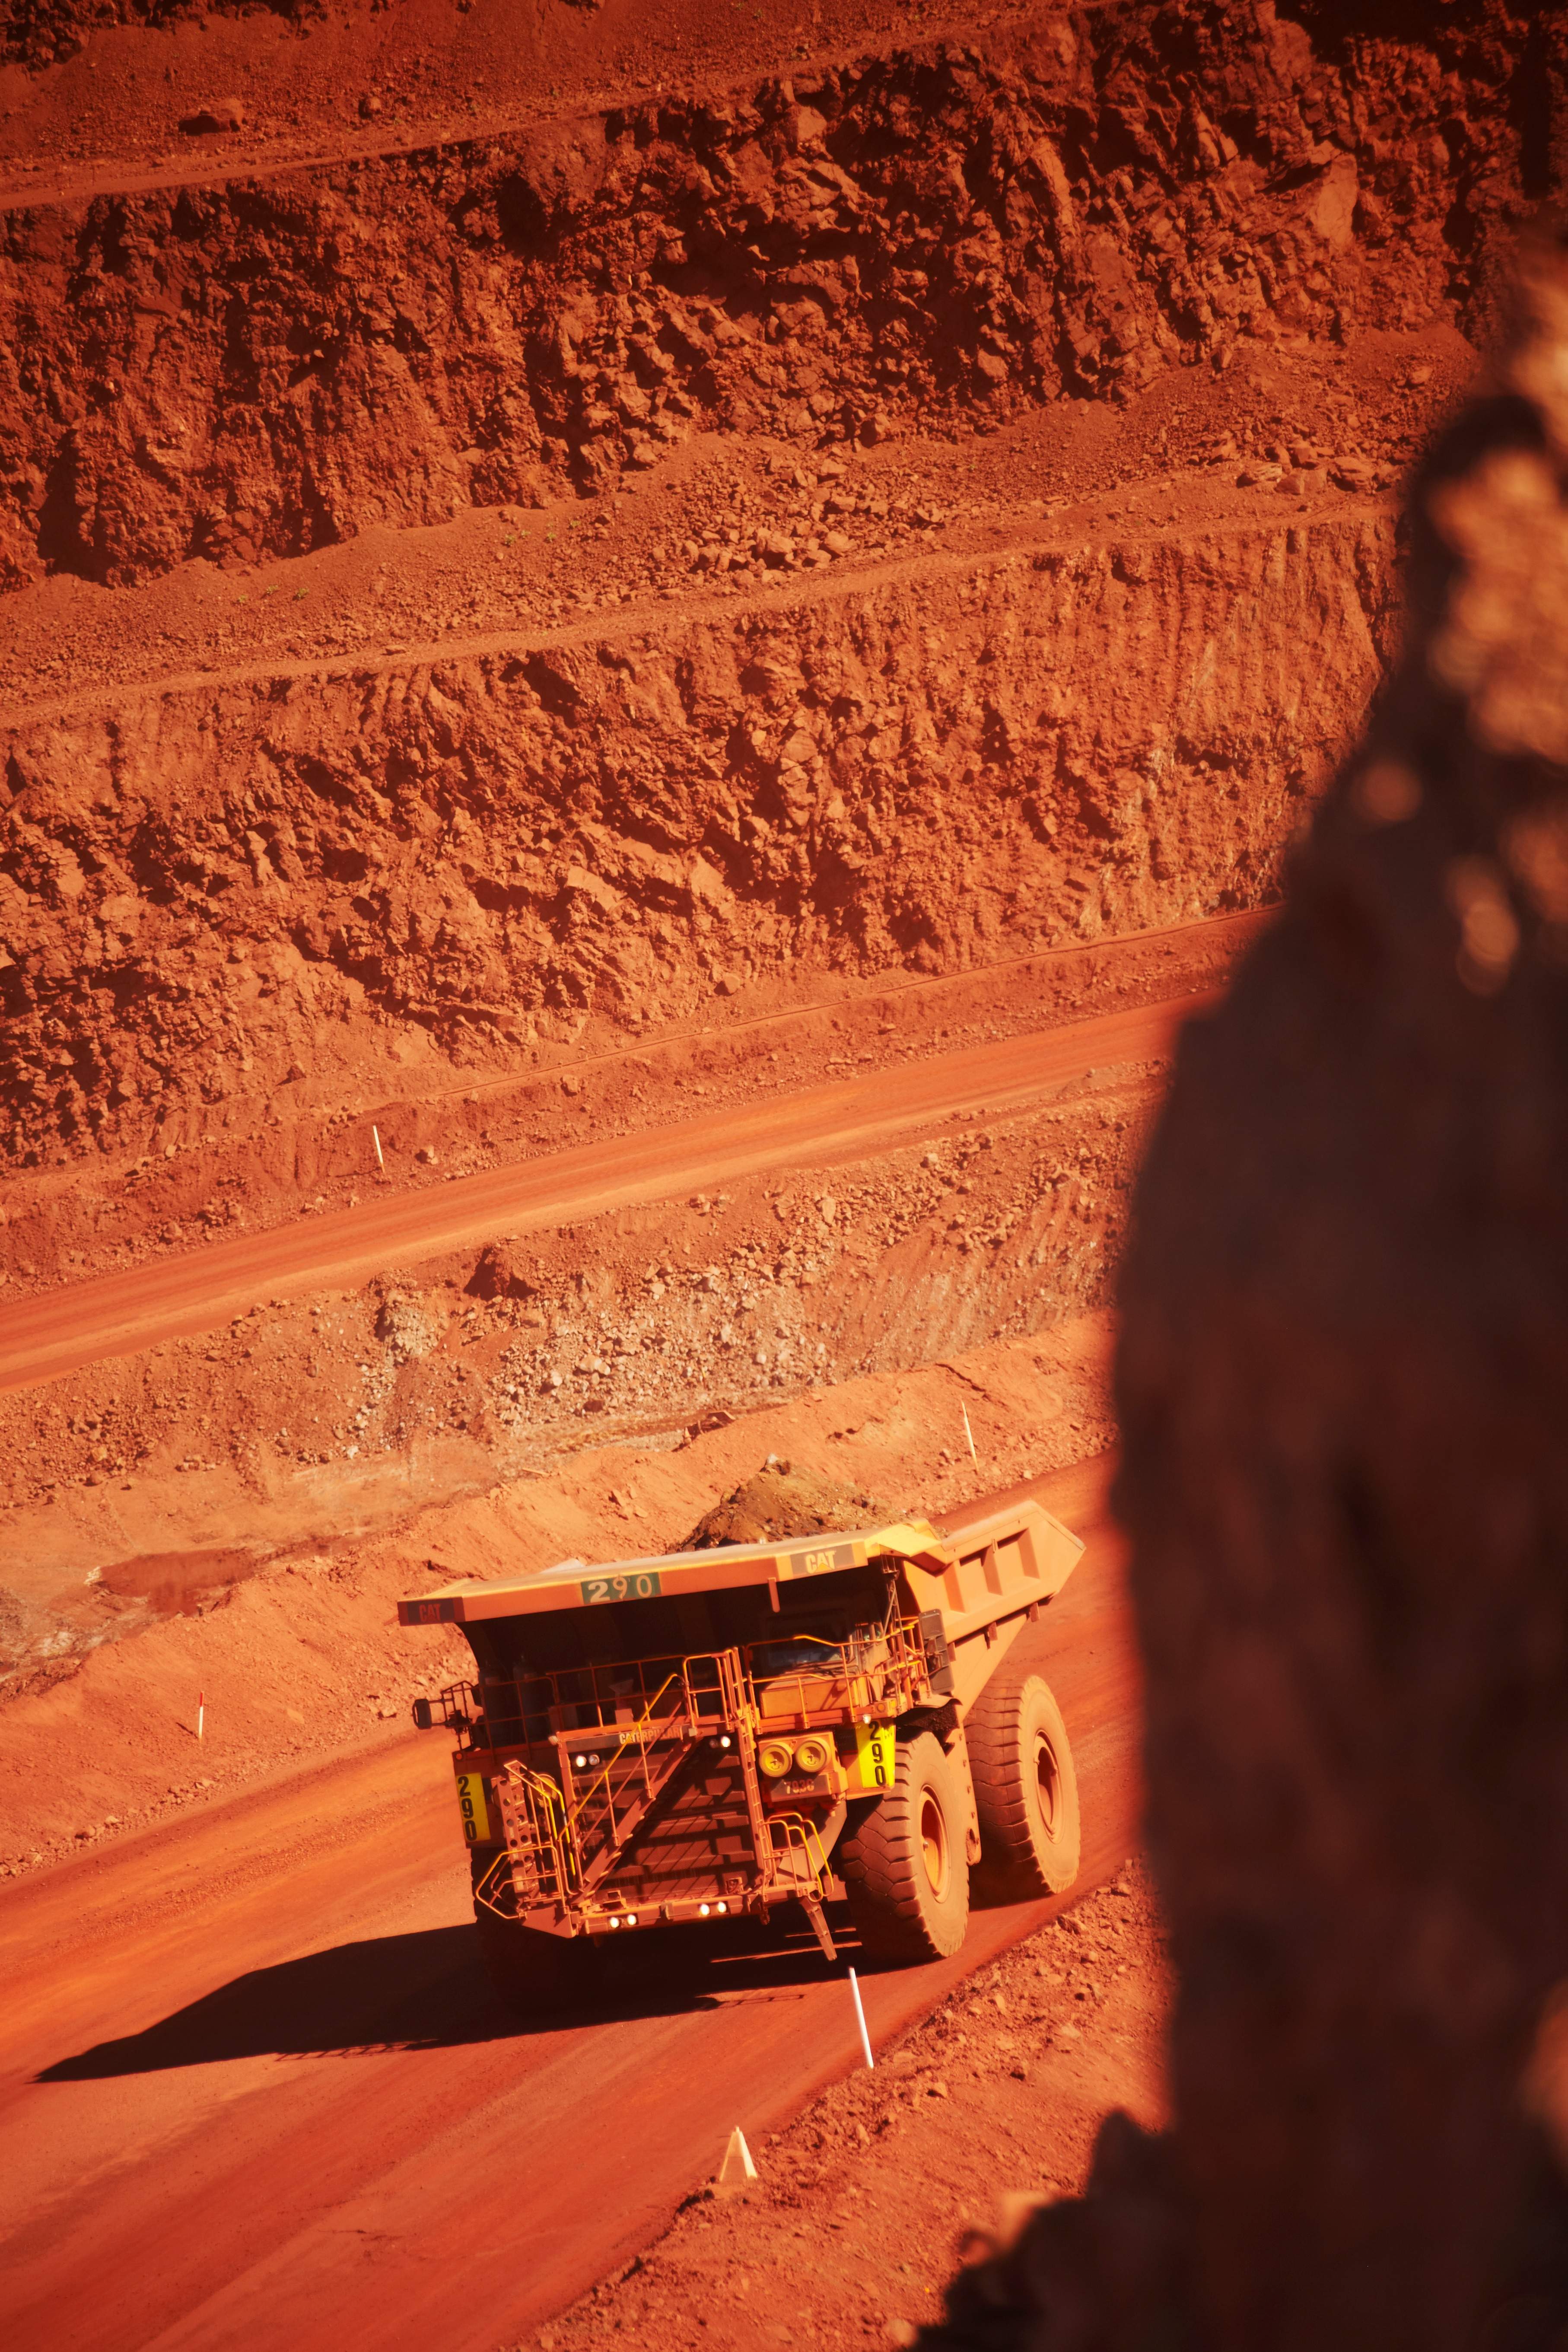 Trabajos de BHP en la cuenca minera de la localidad de Newman (noroeste de Australia) / BHP